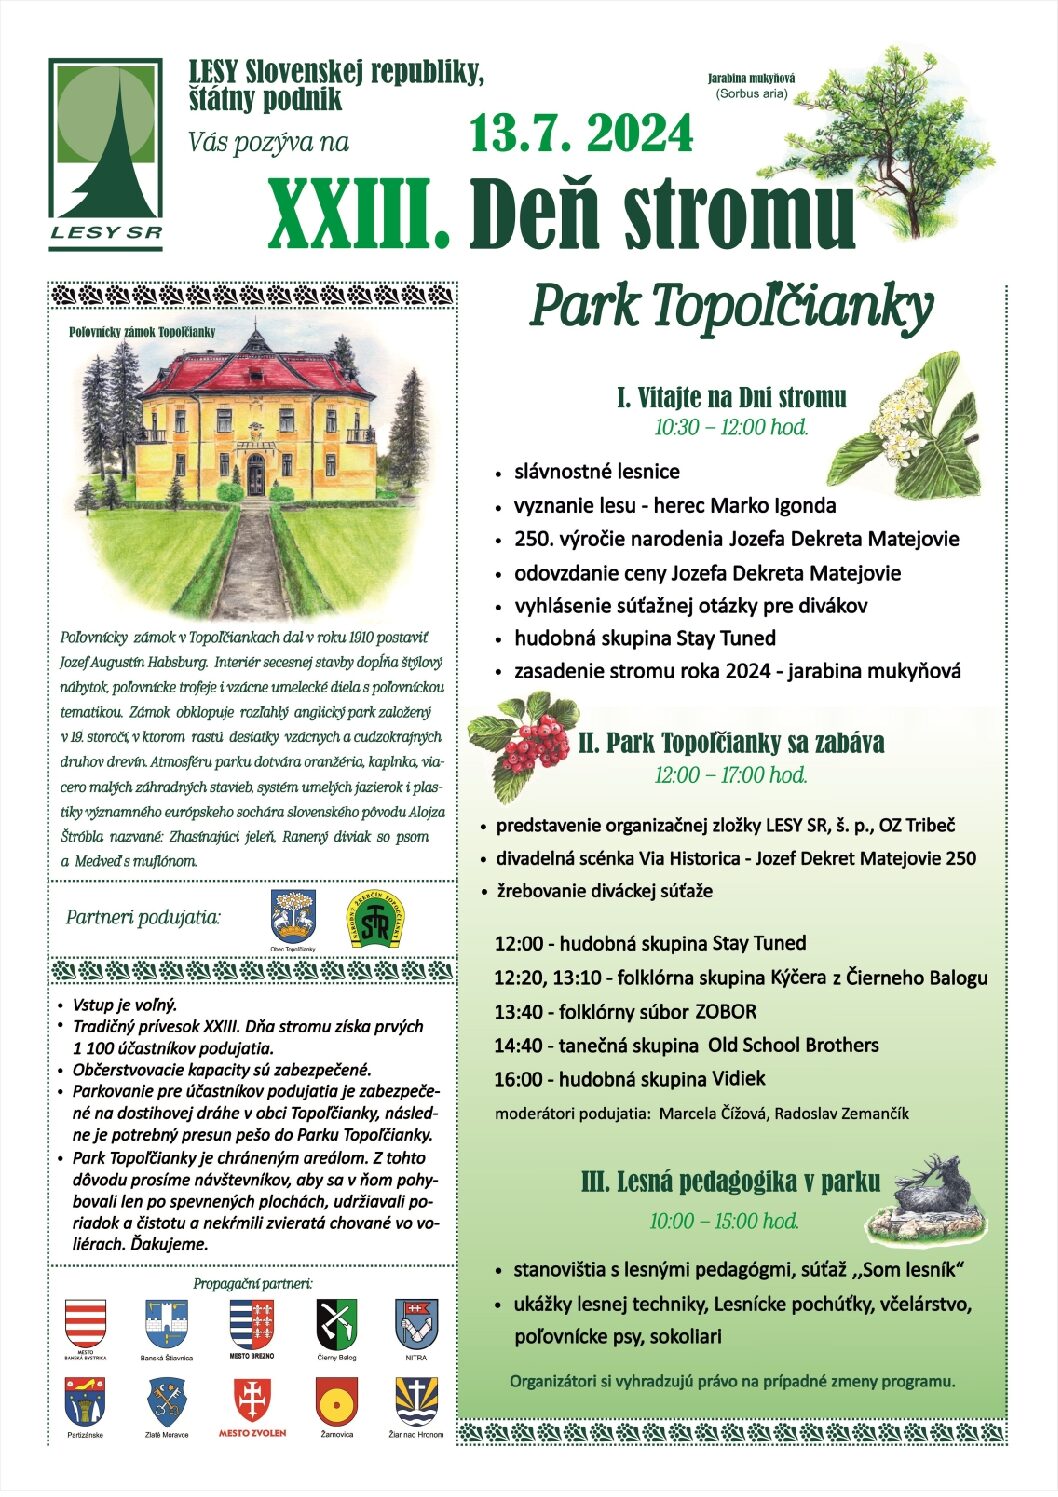 XXIII. deň stromu (park Topoľčianky, 13.7.2024)